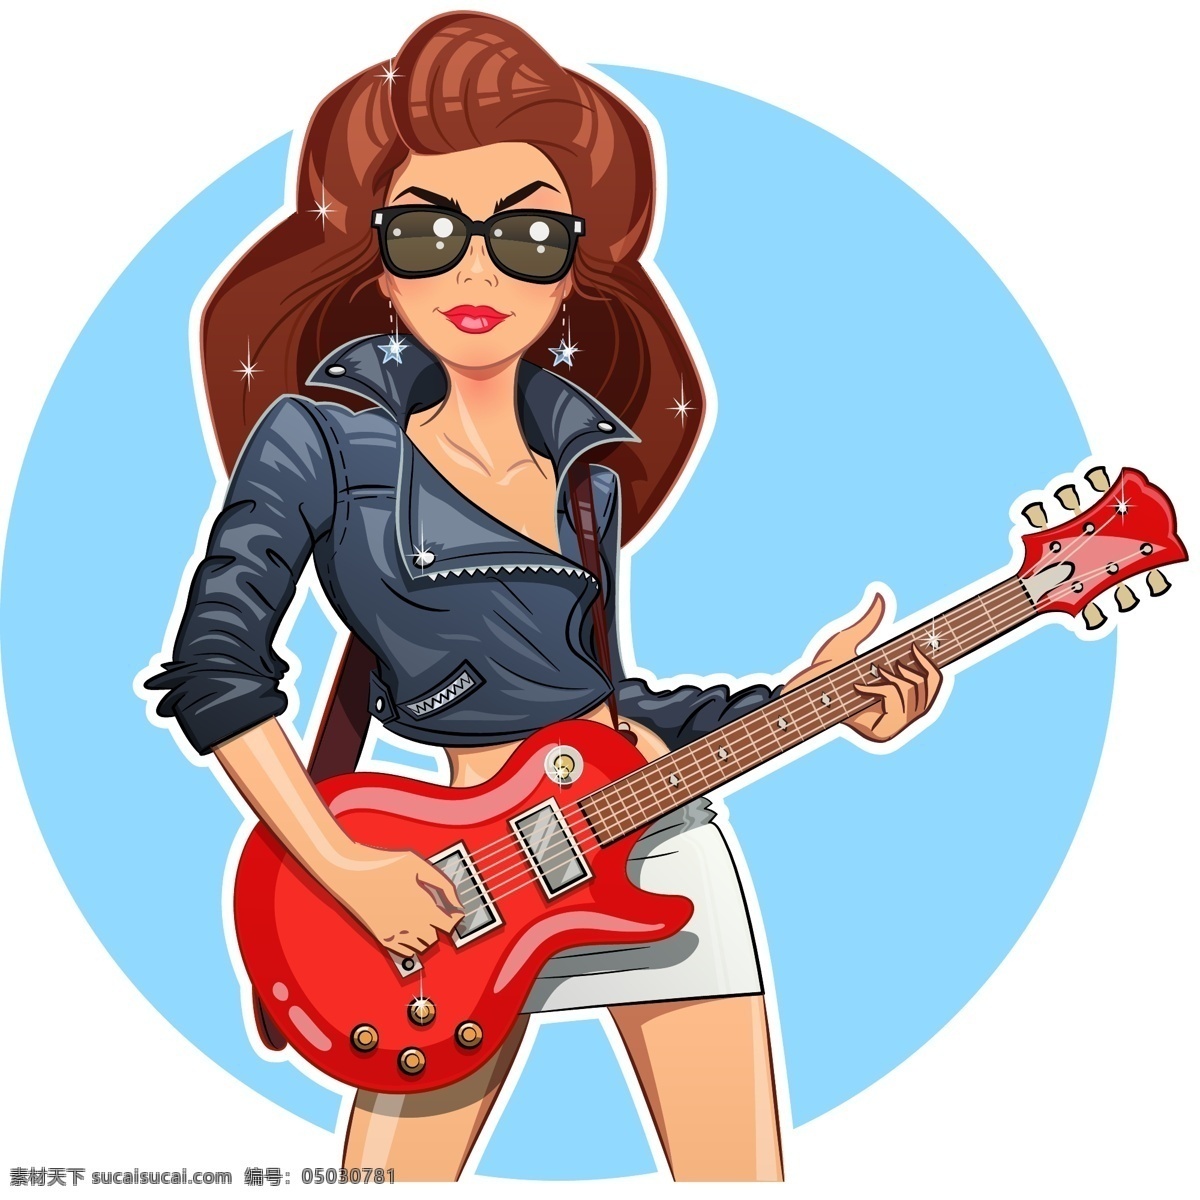 时尚 摇滚音乐 女人 插画 人物 手绘 音乐 吉它 摇滚 职业 专业